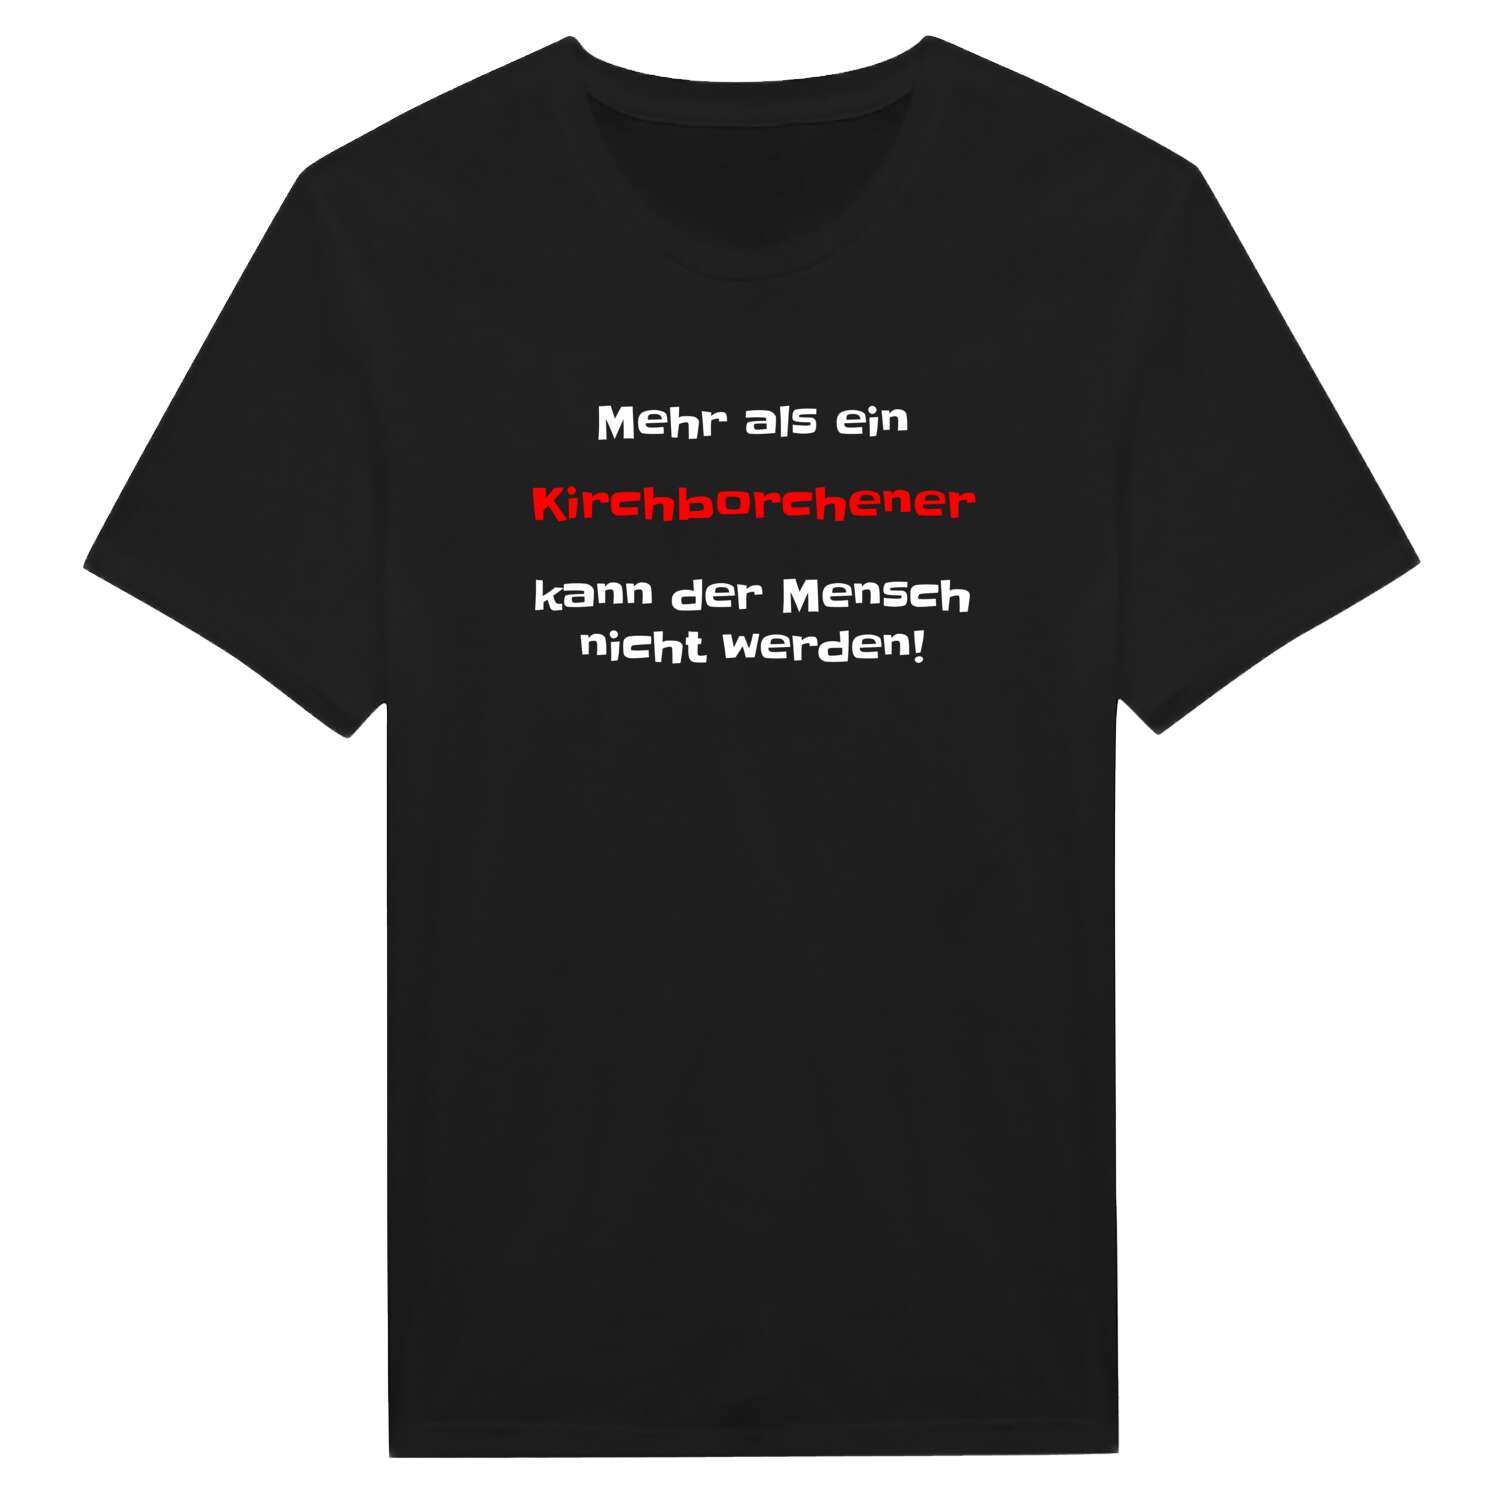 Kirchborchen T-Shirt »Mehr als ein«